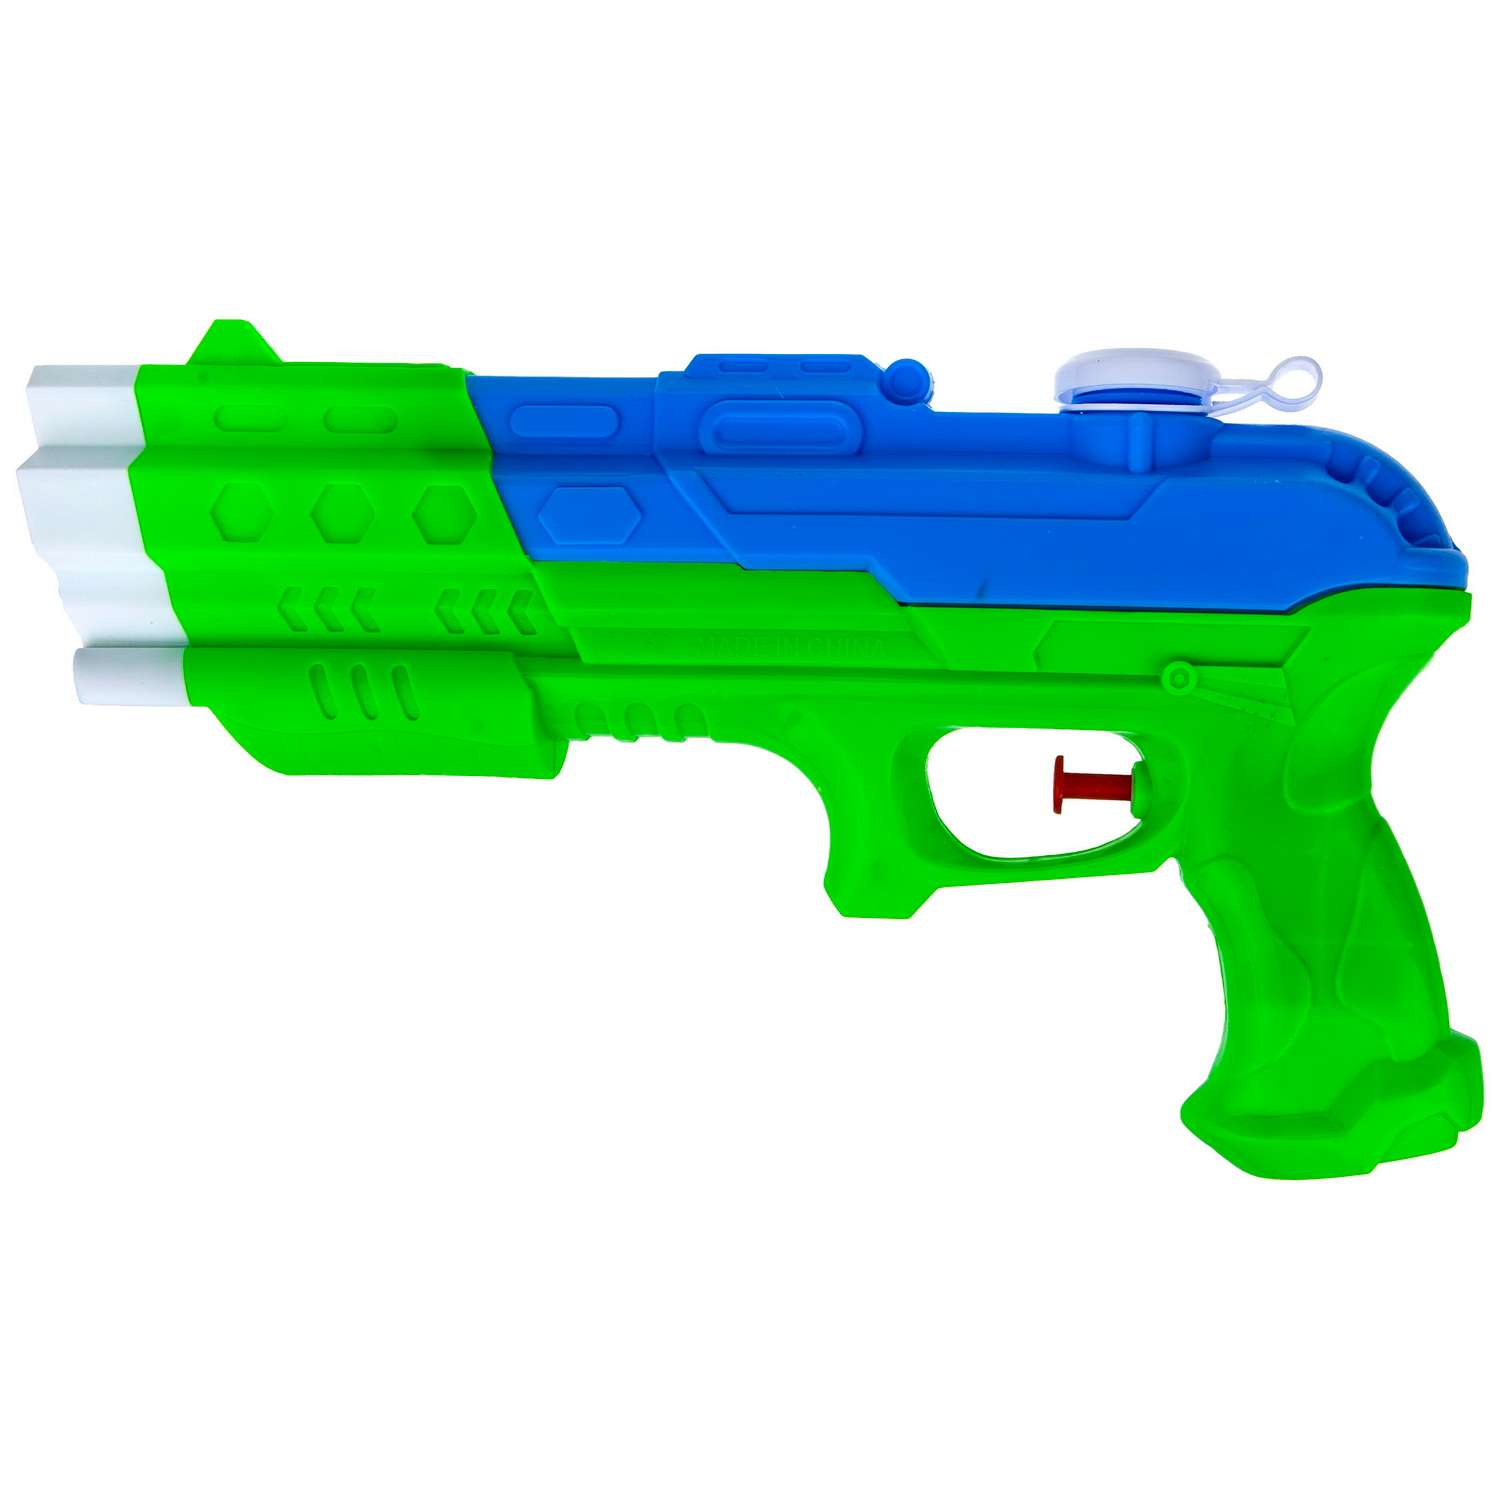 Водное оружие Aqua мания Пистолет зелено-синий - фото 1